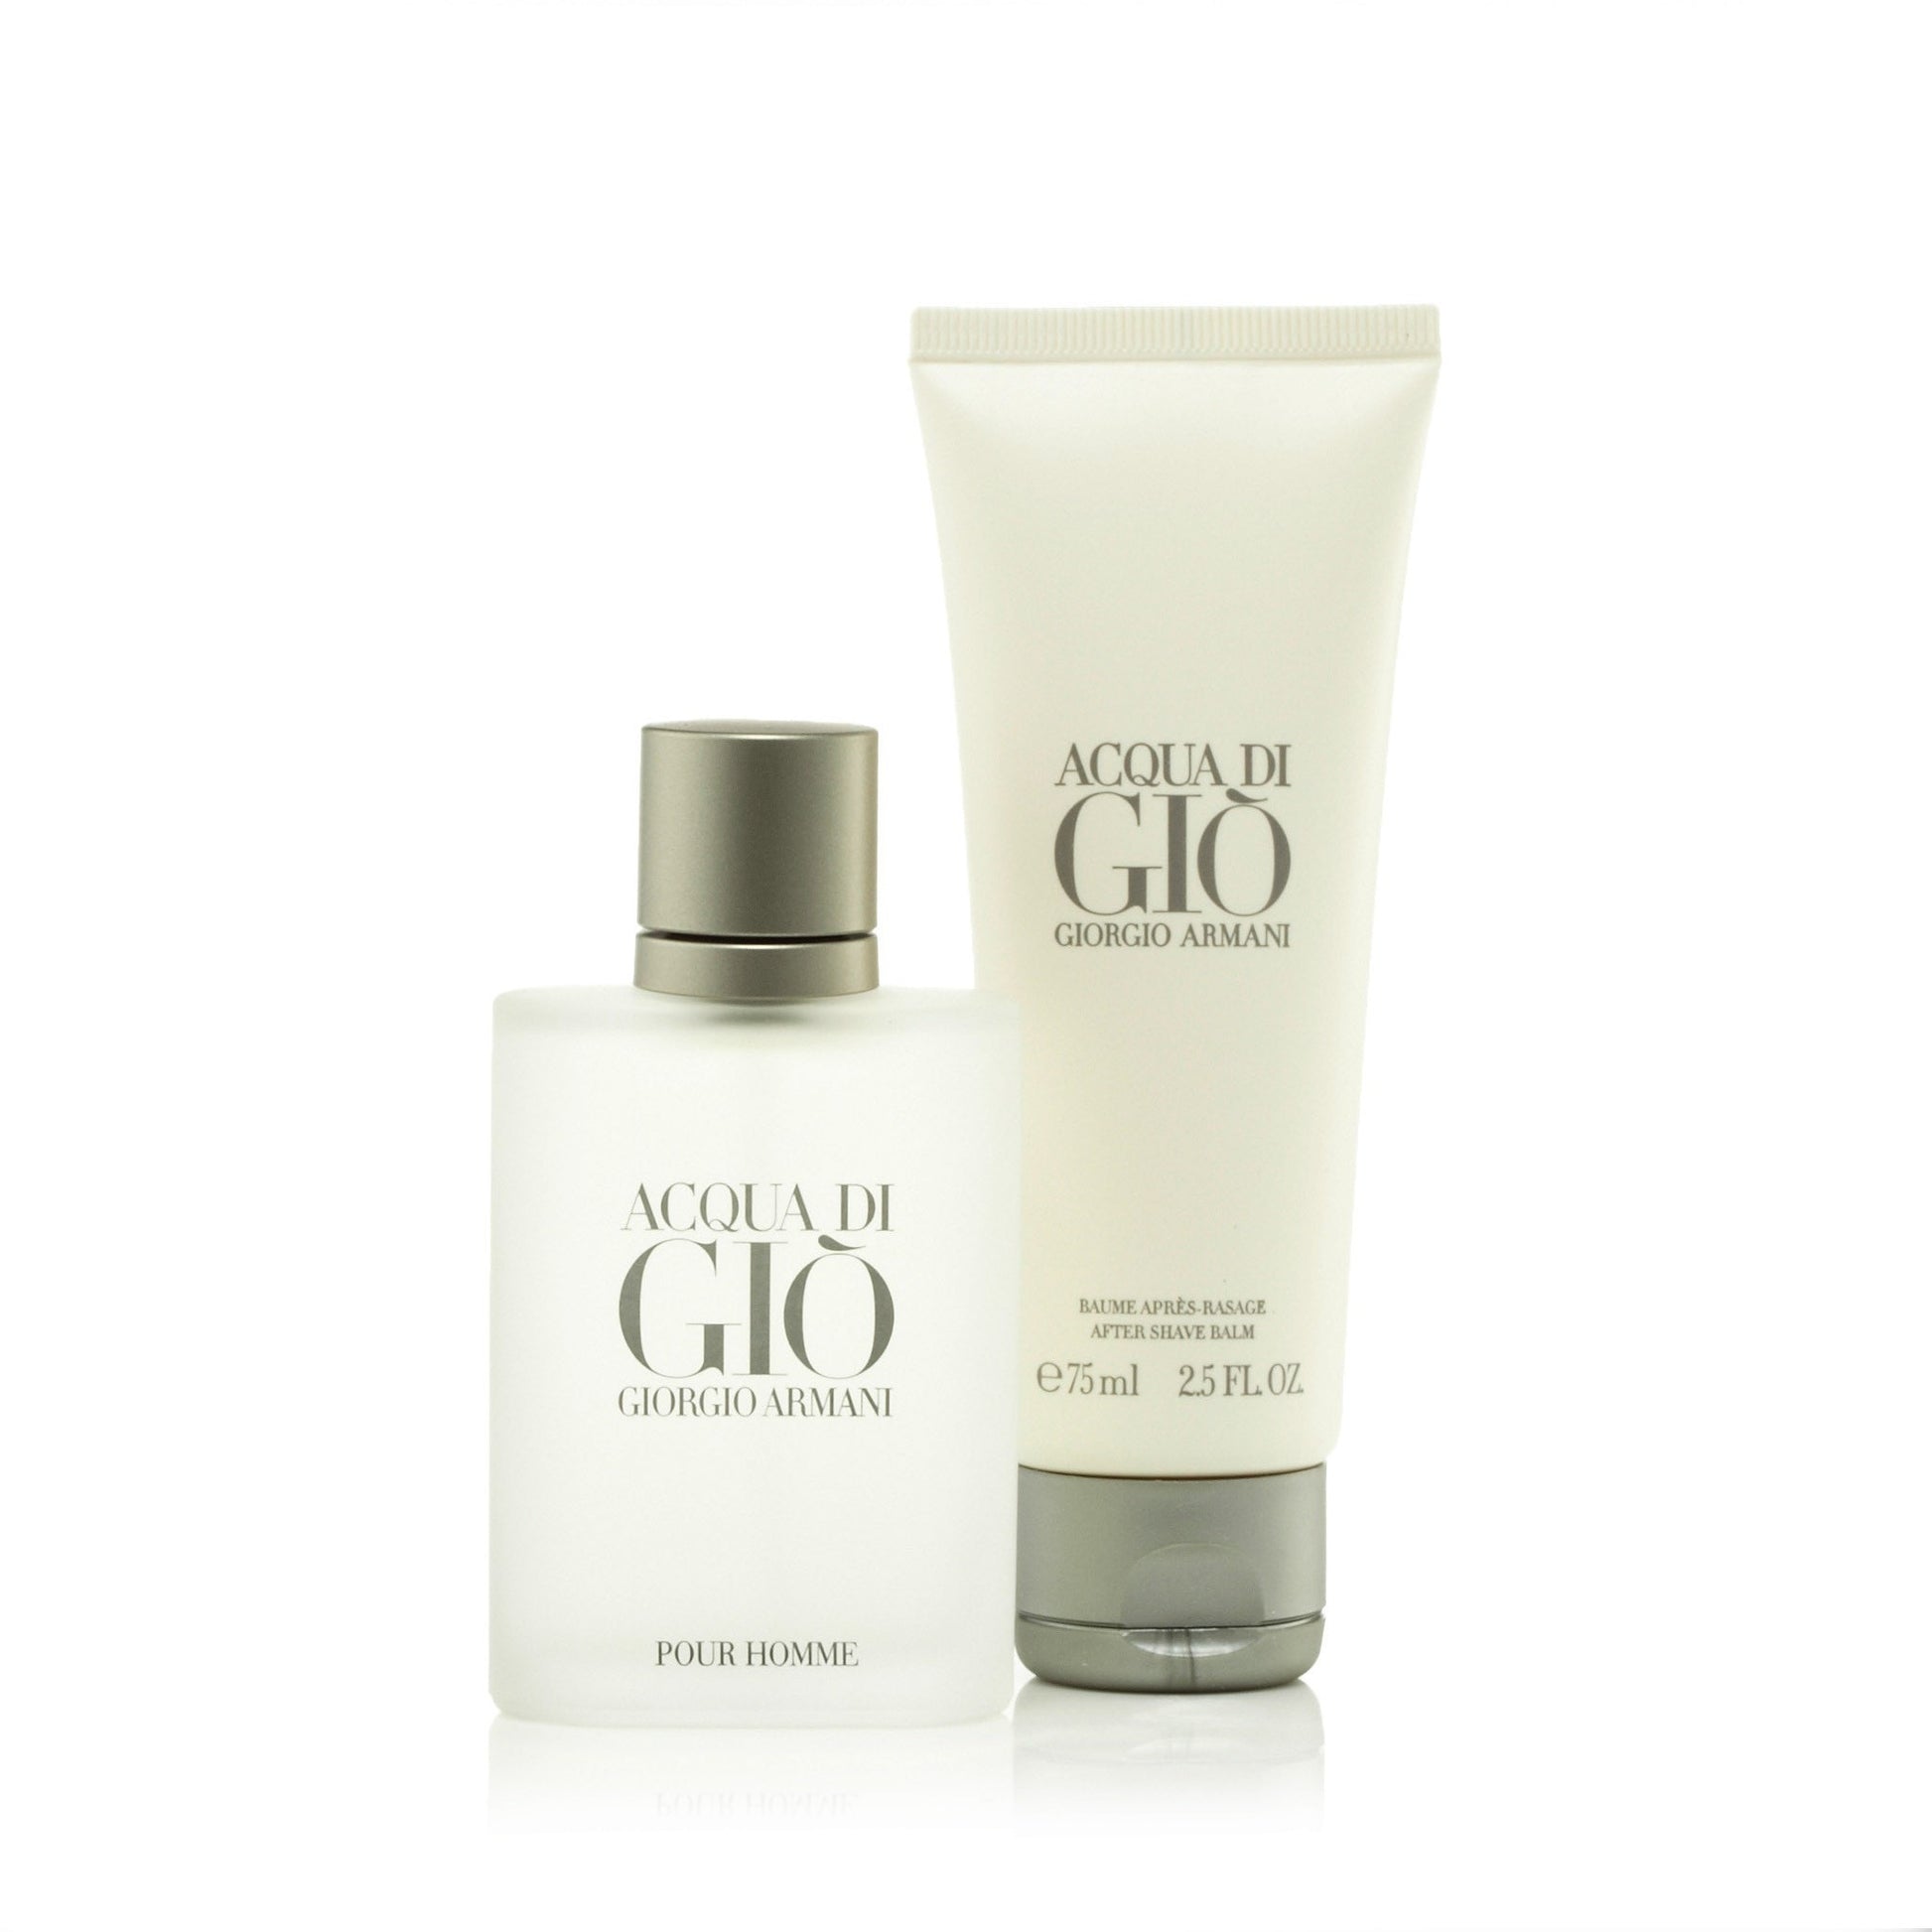 Acqua Di Gio Gift Set for Men by Giorgio Armani 1.7 oz. Click to open in modal